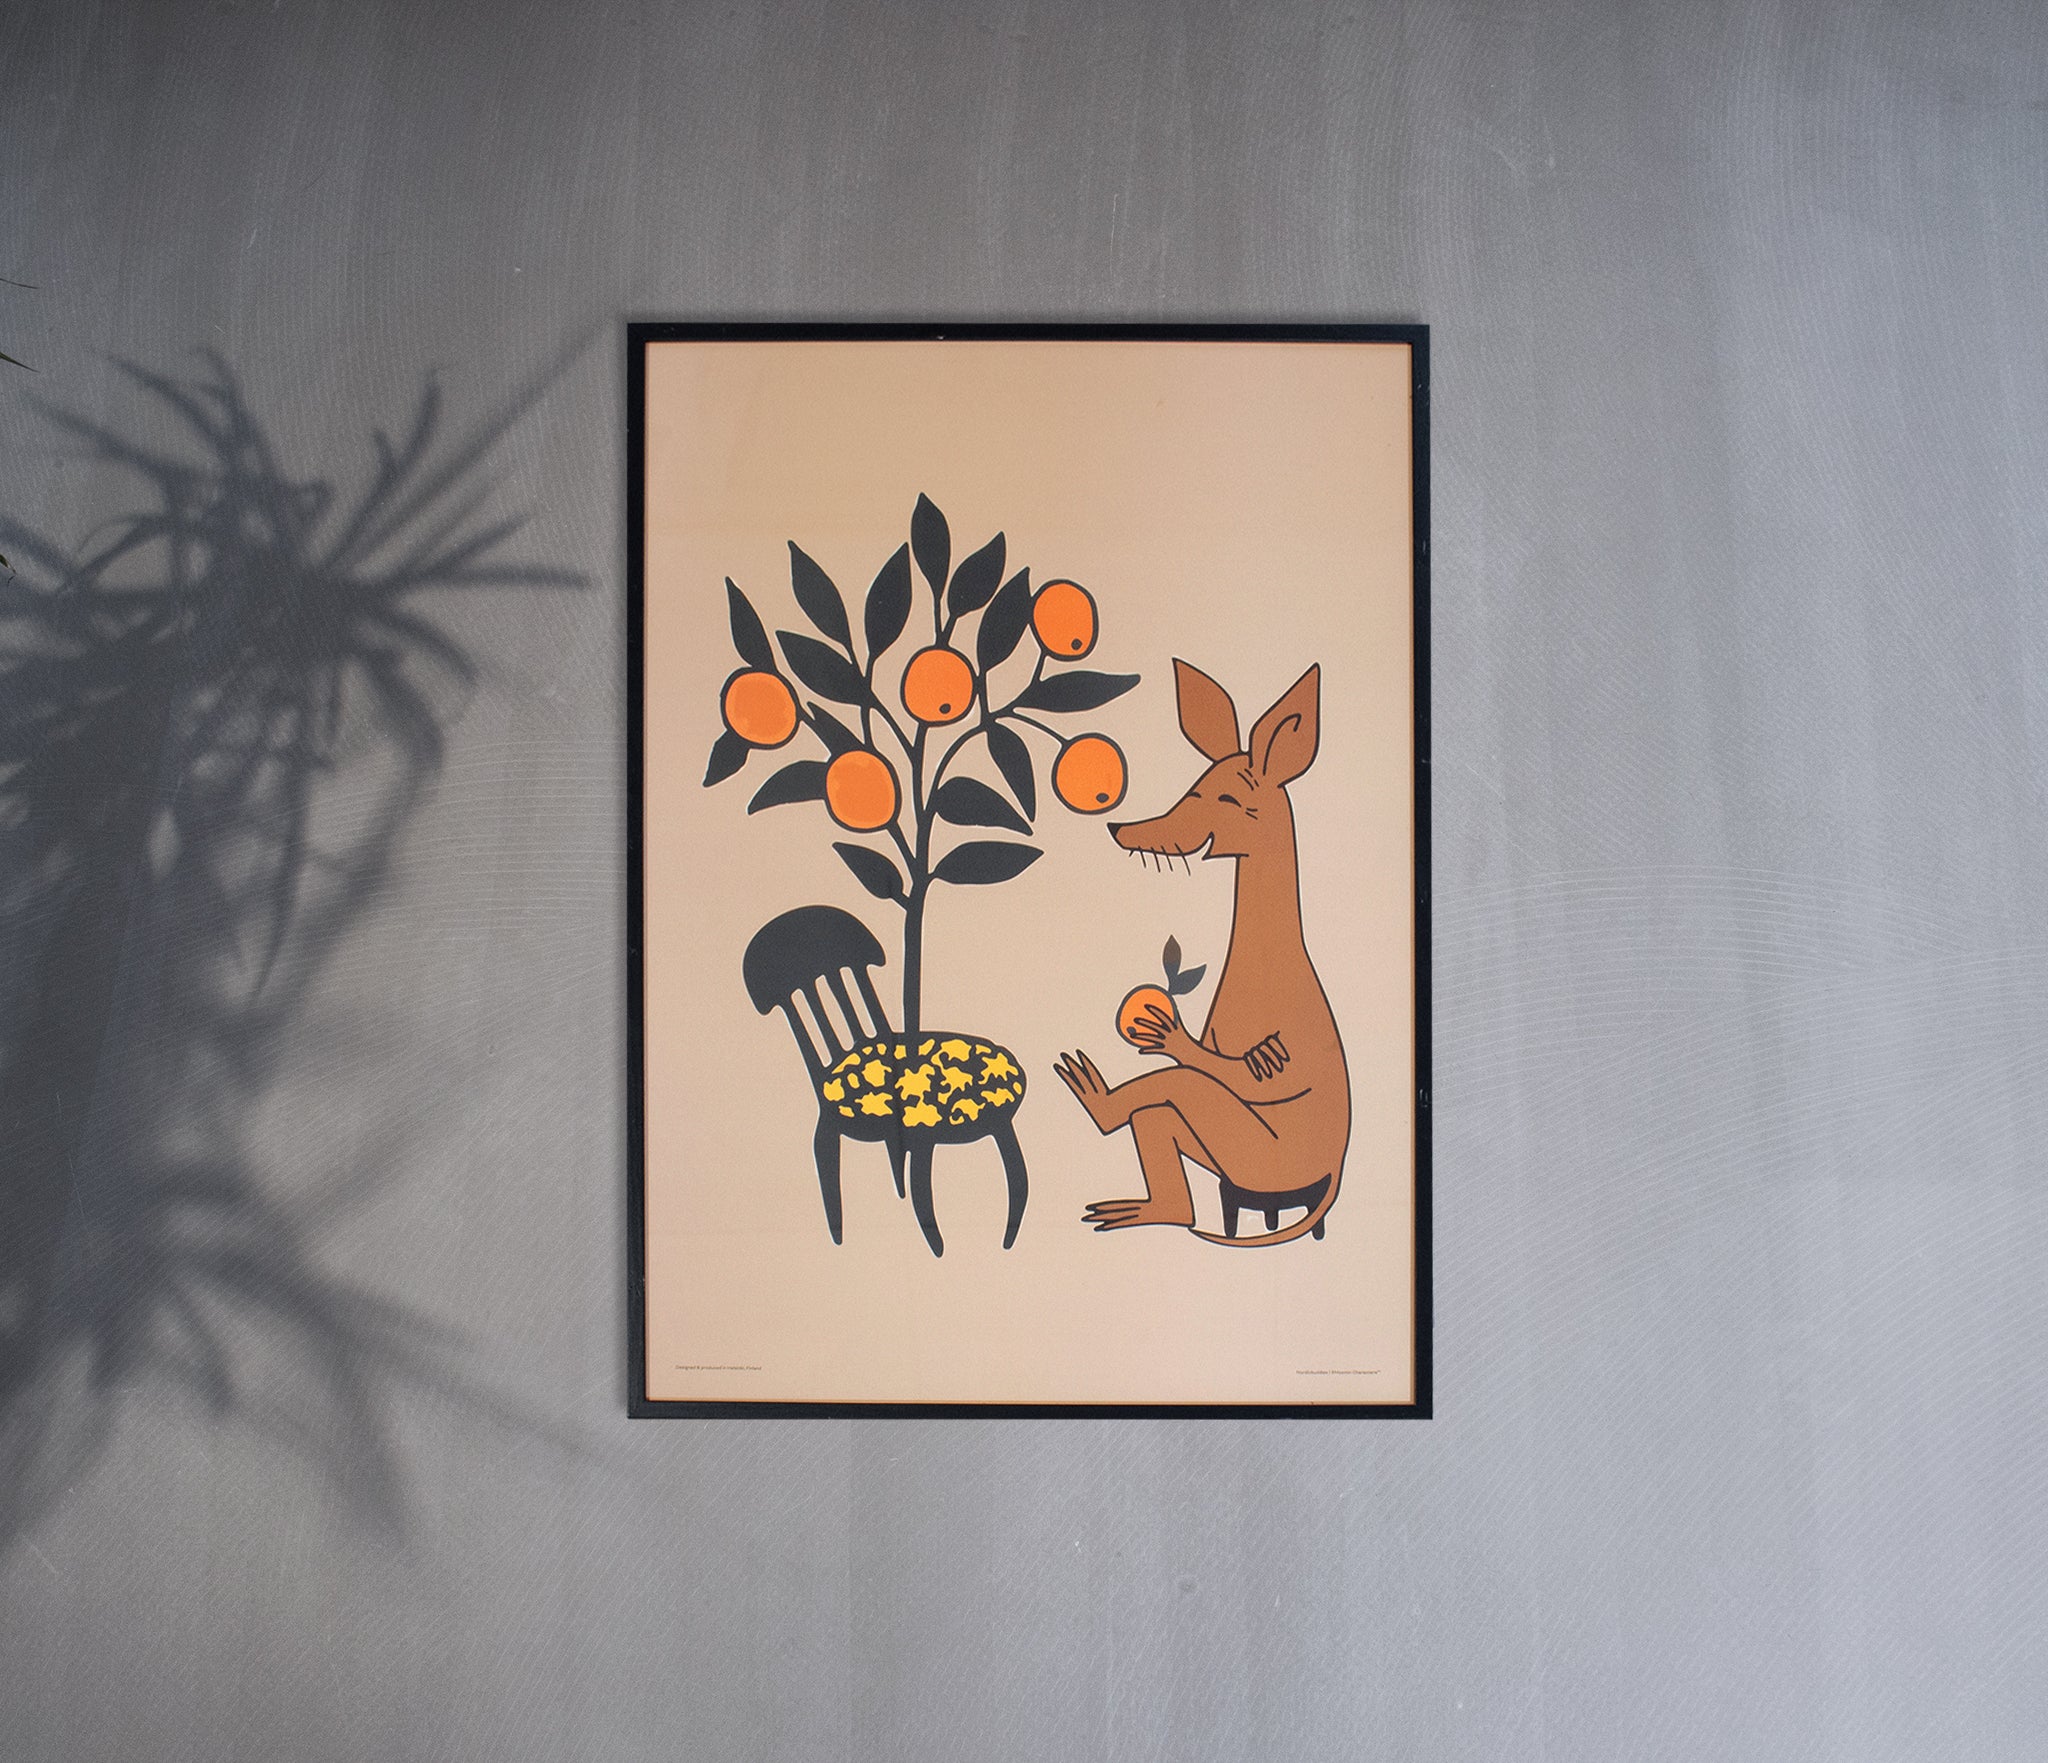 Sniffs Oranges Poster 50x70cm - Beige